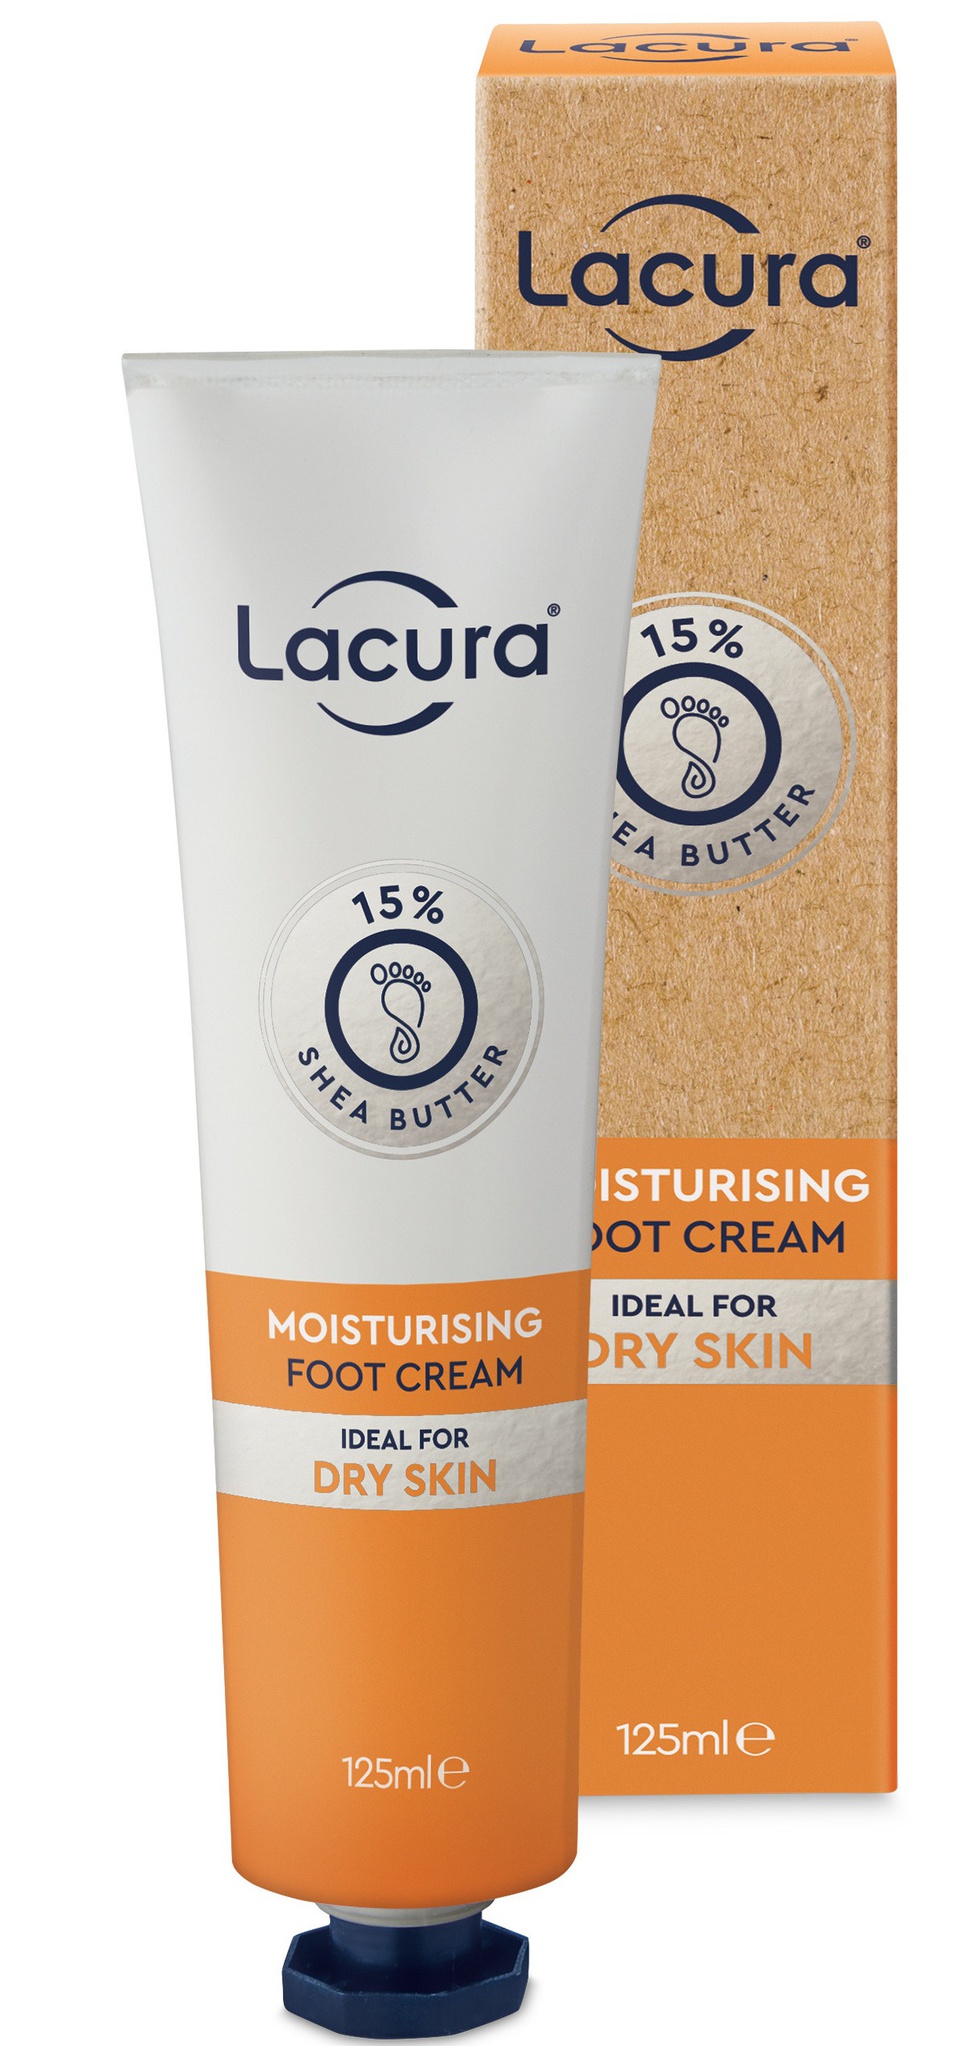 LACURA Moisturising Foot Cream